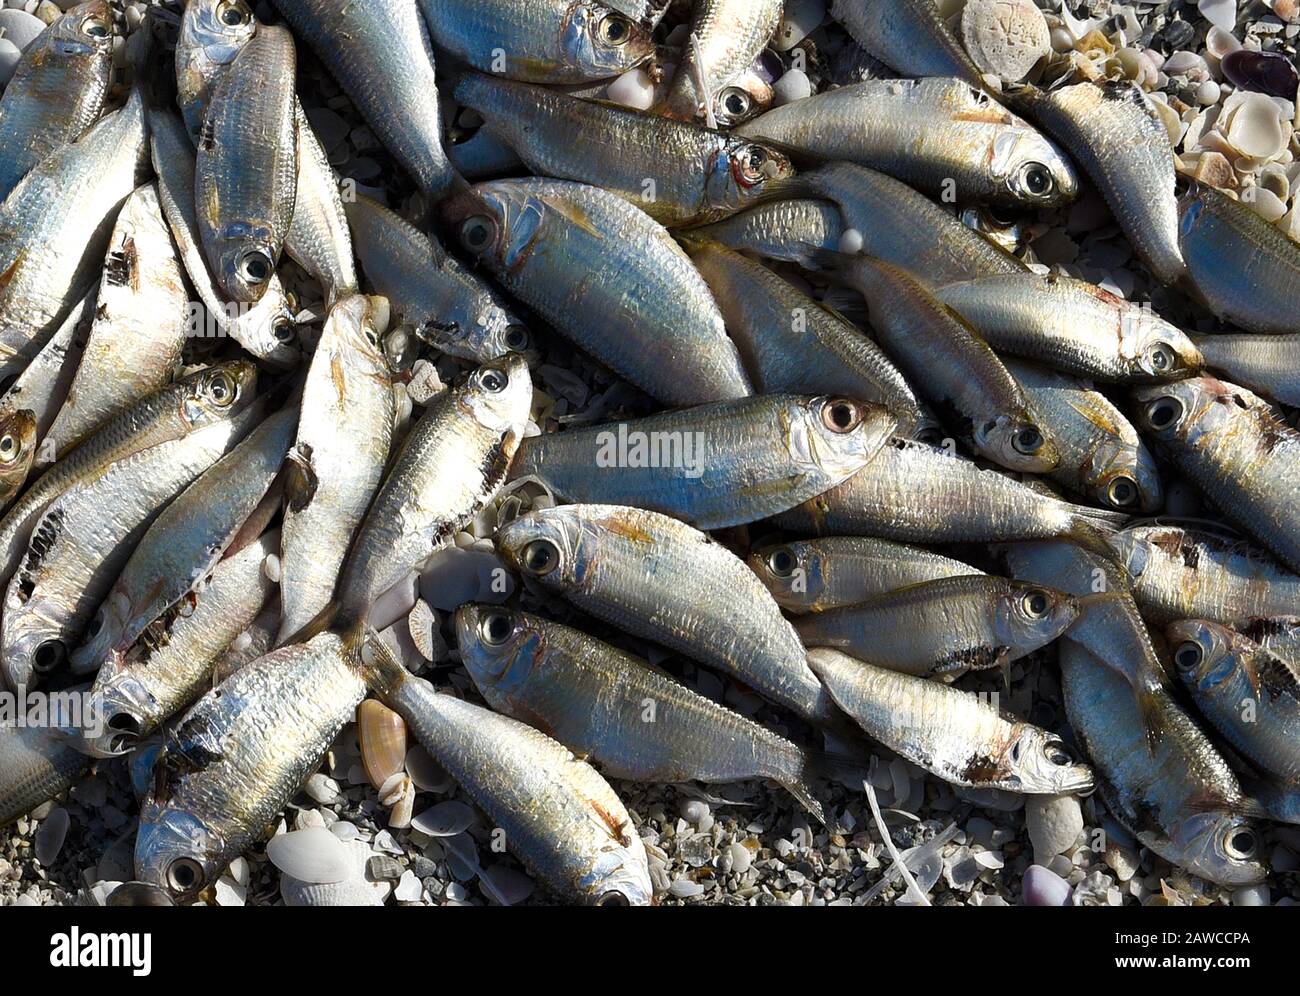 Red Tide: Spiaggia coperta di pesci morti uccisi dalla fioritura di alghe rosse tossiche. Foto Stock